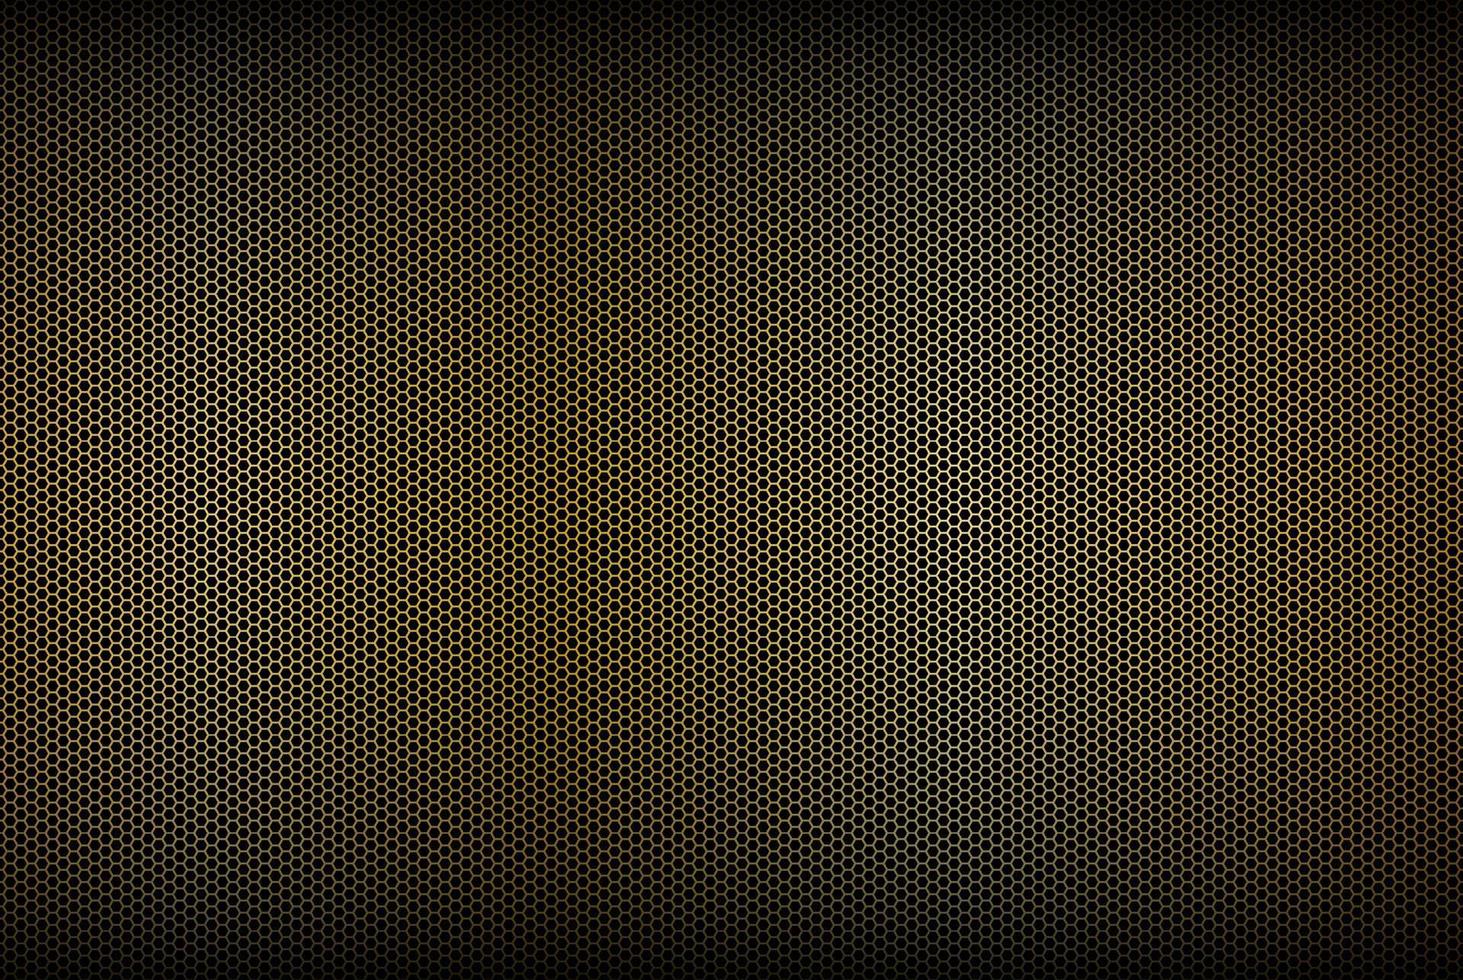 schwarz-goldener polygonaler Hintergrund, abstrakter materieller Hintergrund, moderne kreative Designvorlagen aus Edelstahl, bunte Vektorillustration vektor